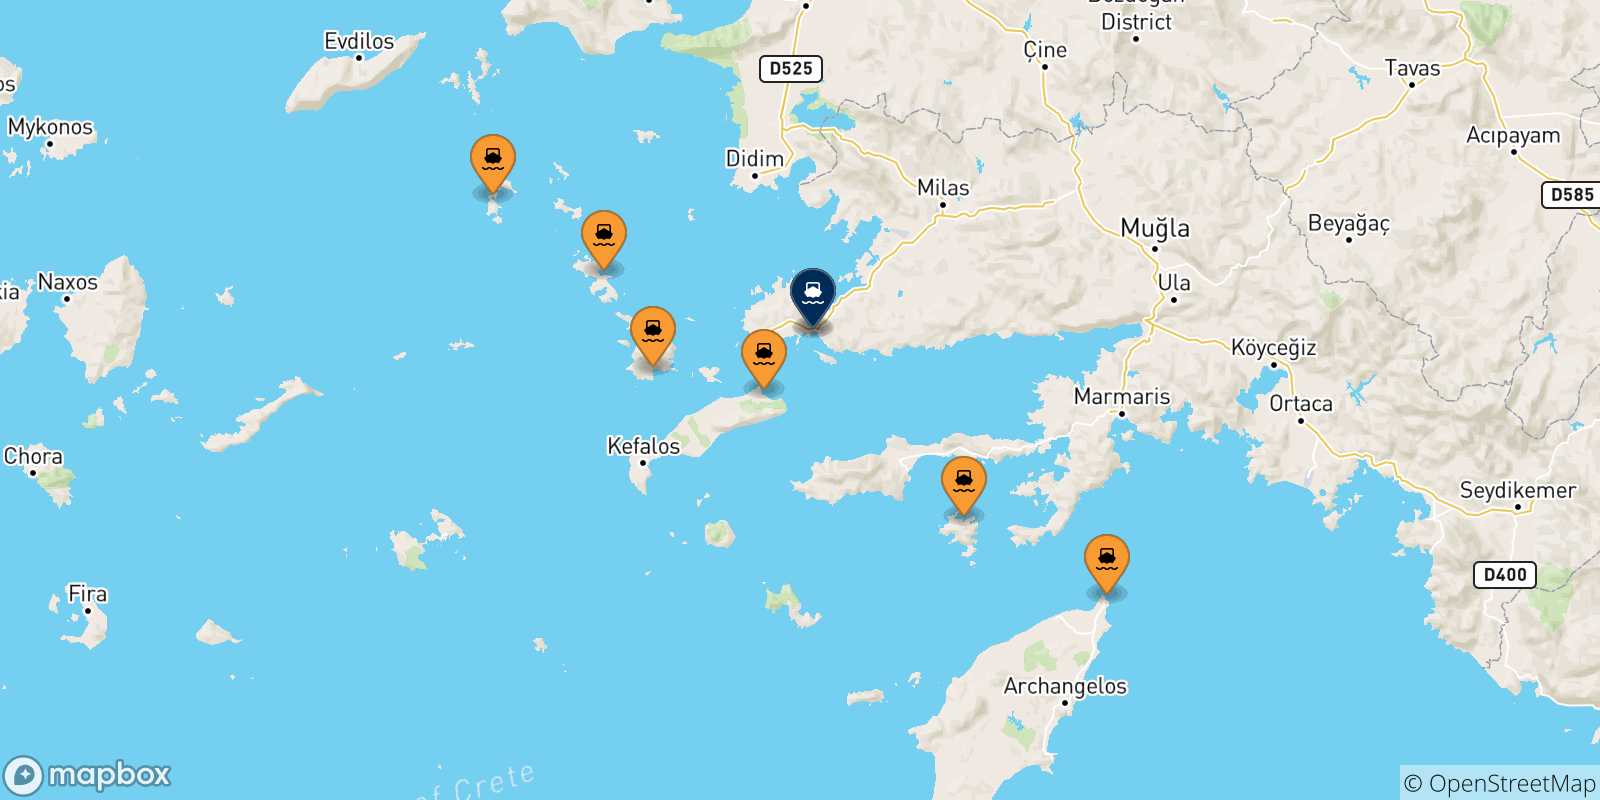 Mappa delle possibili rotte tra le Isole Dodecaneso e la Turchia